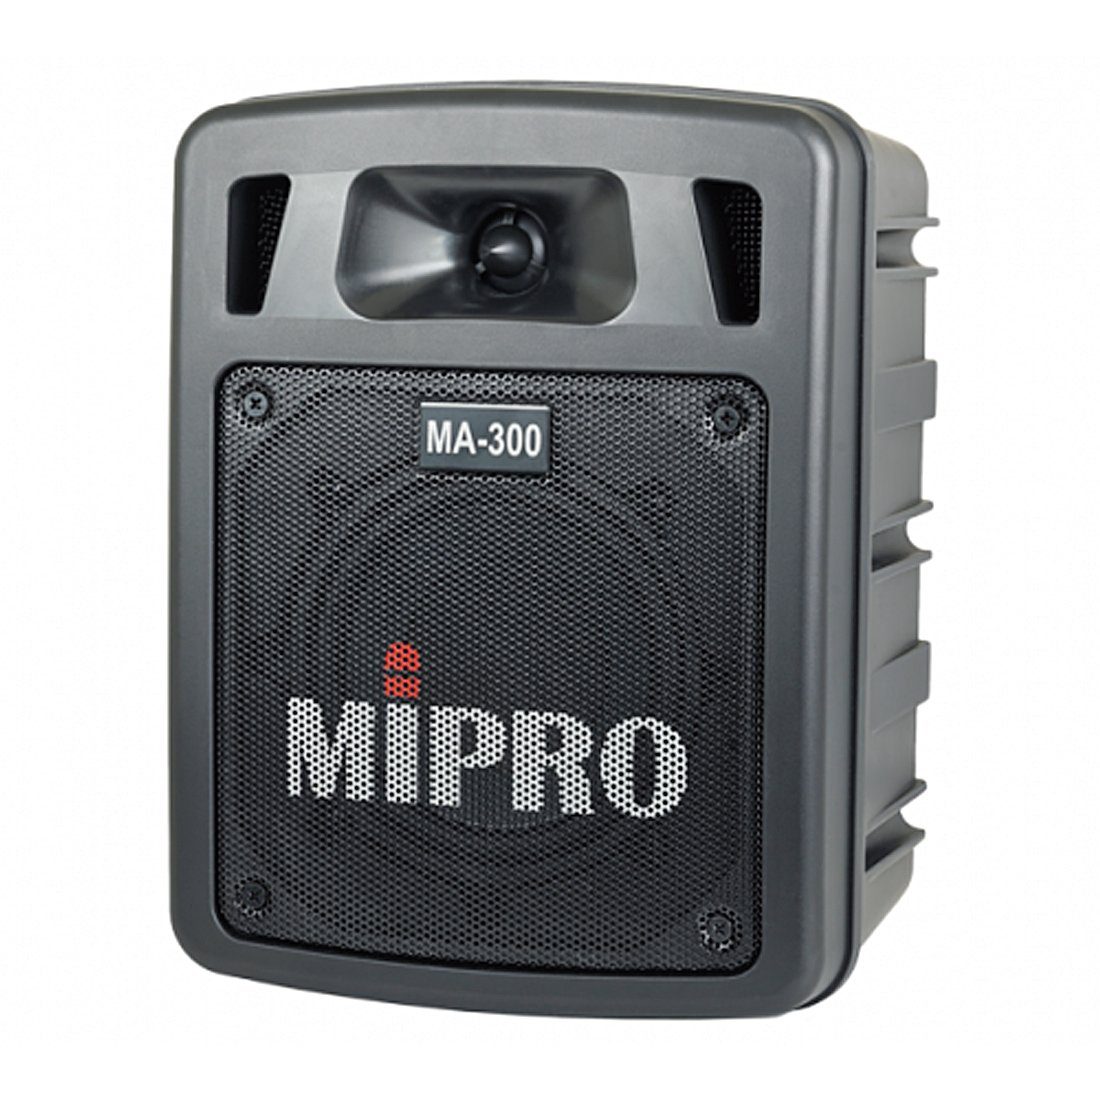 Audio Handsender Mipro Beschallungssystem A-300 60 W) (Bluetooth, Portable-Lautsprecher mit